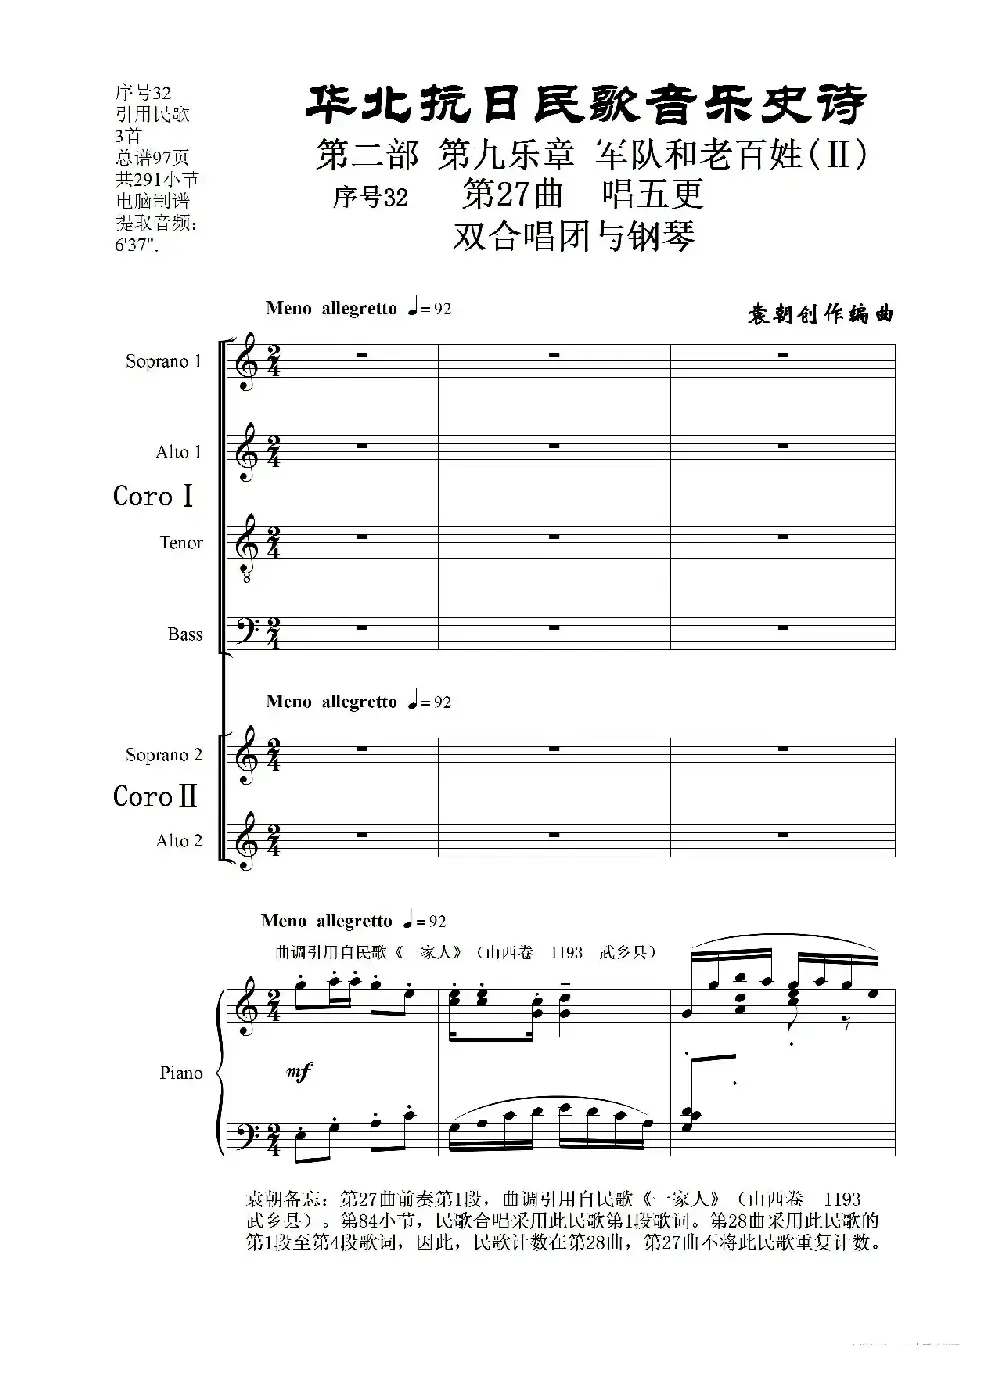 序号32第27曲《唱五更》双合唱团与钢琴